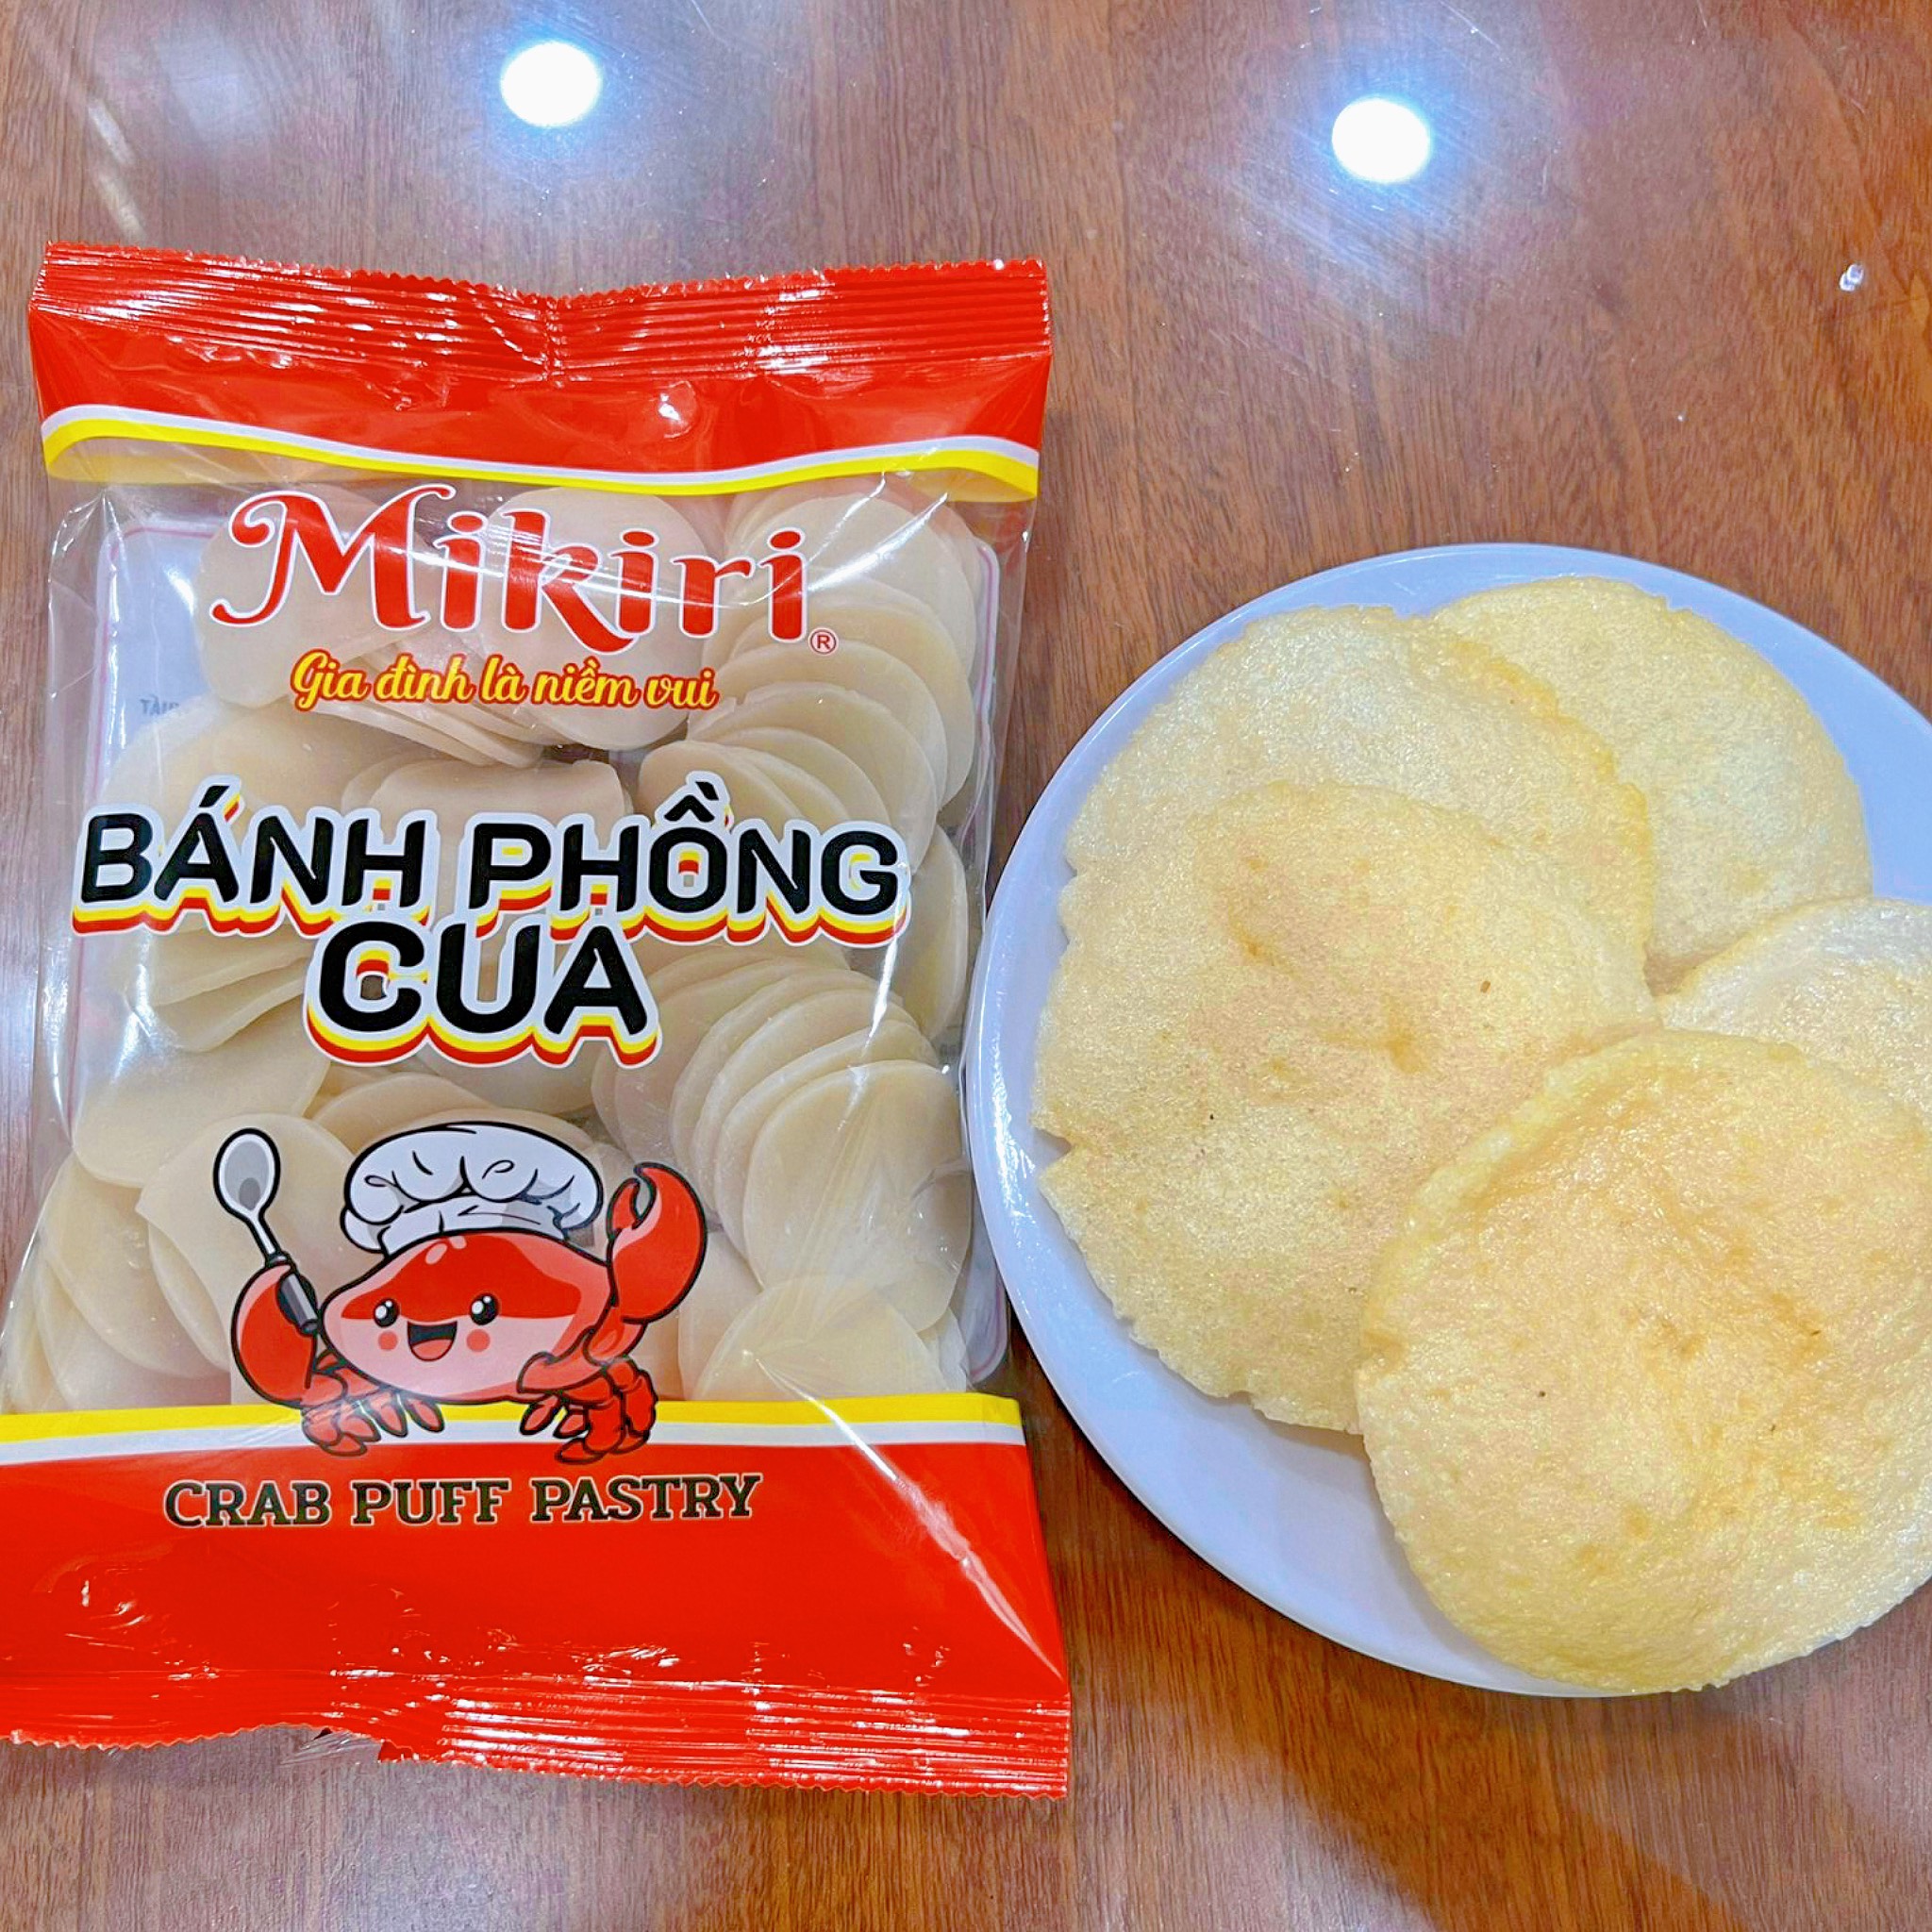 Bánh Phồng Cua Mikiri - Vị thơm ngon nguyên bản Banh-phong-cua-mikiri-1